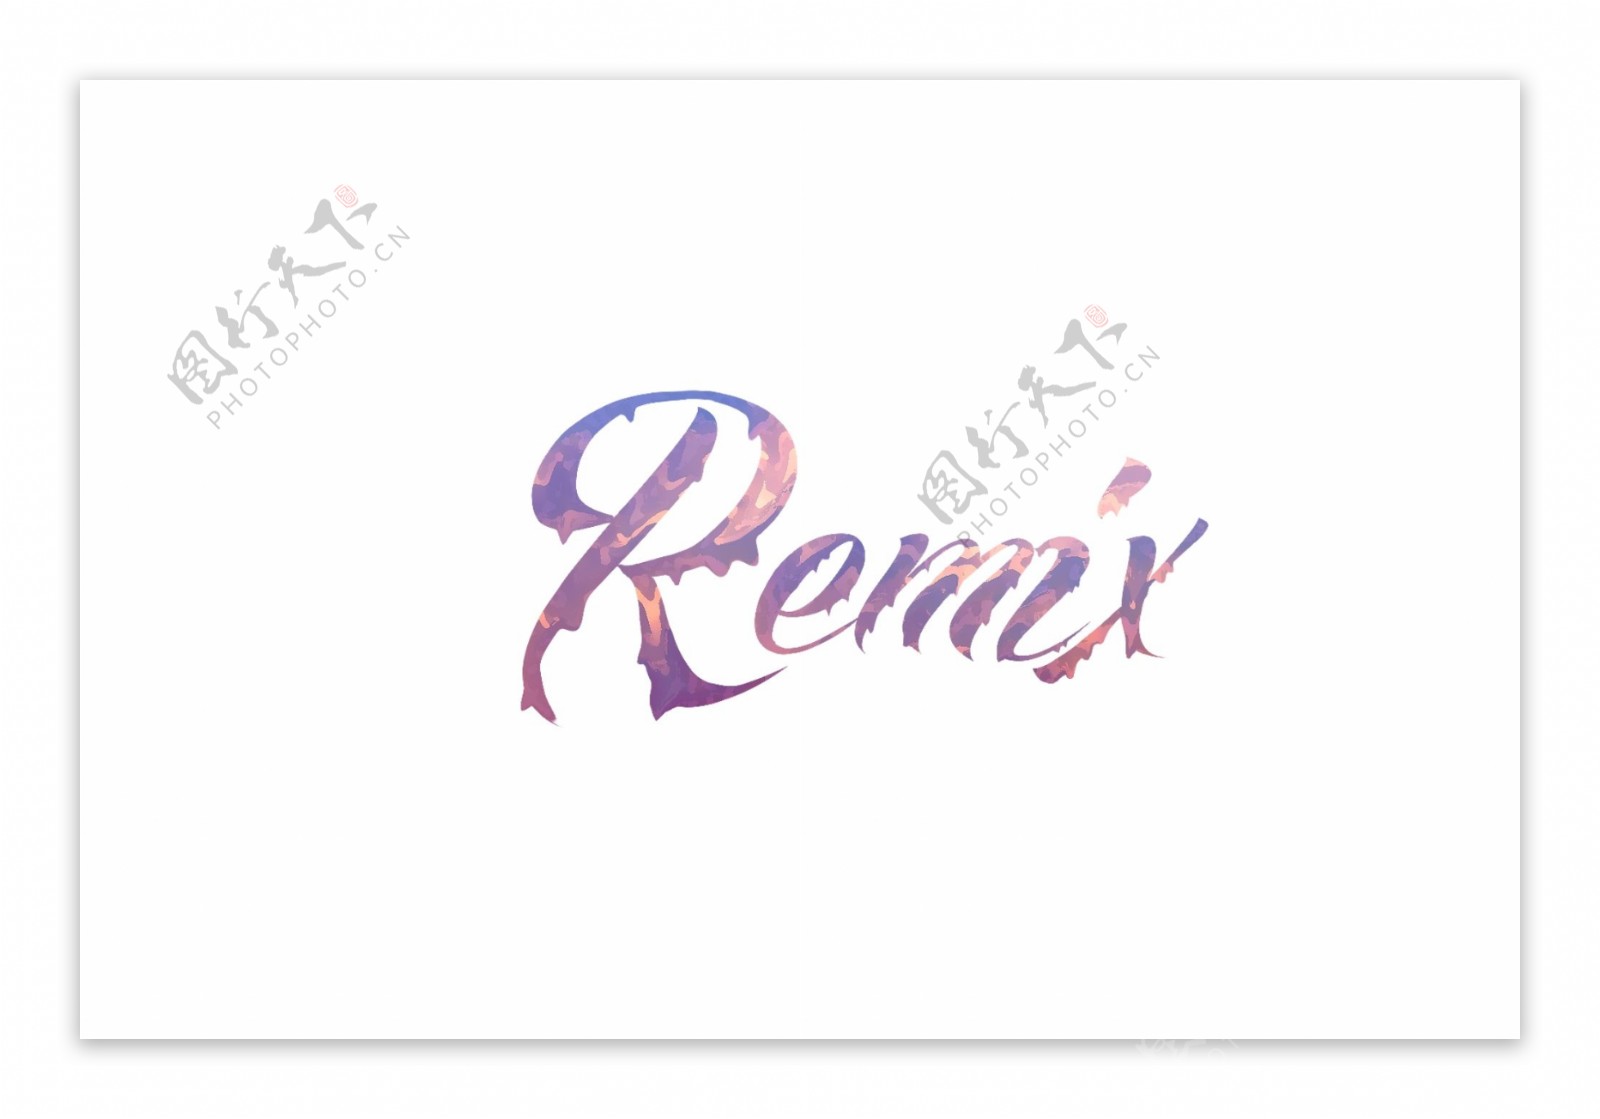 Remix字体设计滴落状